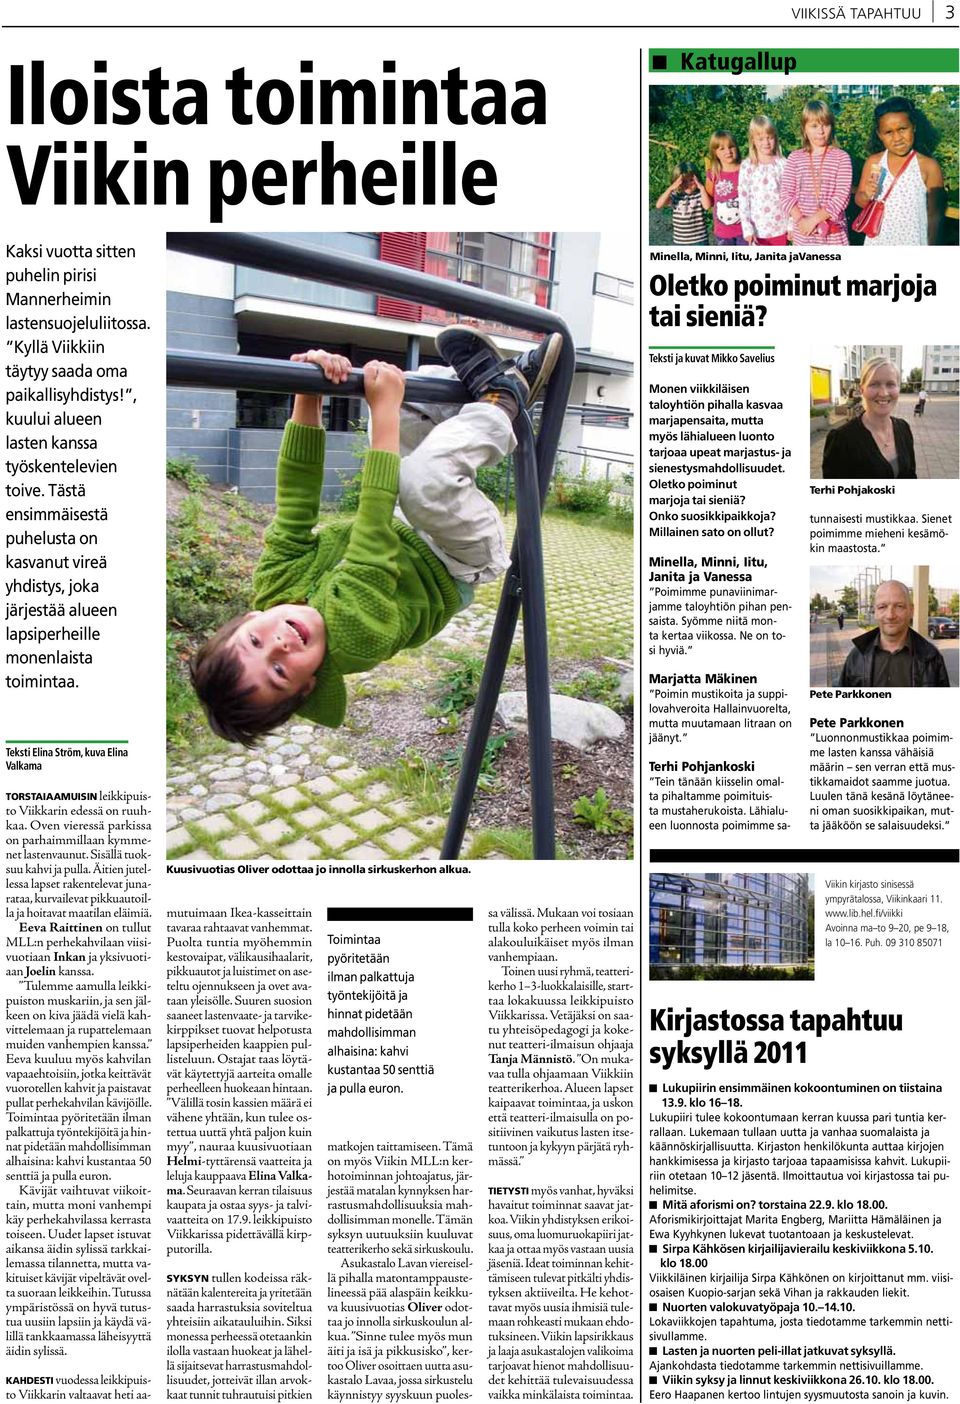 Teksti Elina Ström, kuva Elina Valkama TORSTAIAAMUISIN leikkipuisto Viikkarin edessä on ruuhkaa. Oven vieressä parkissa on parhaimmillaan kymmenet lastenvaunut. Sisällä tuoksuu kahvi ja pulla.